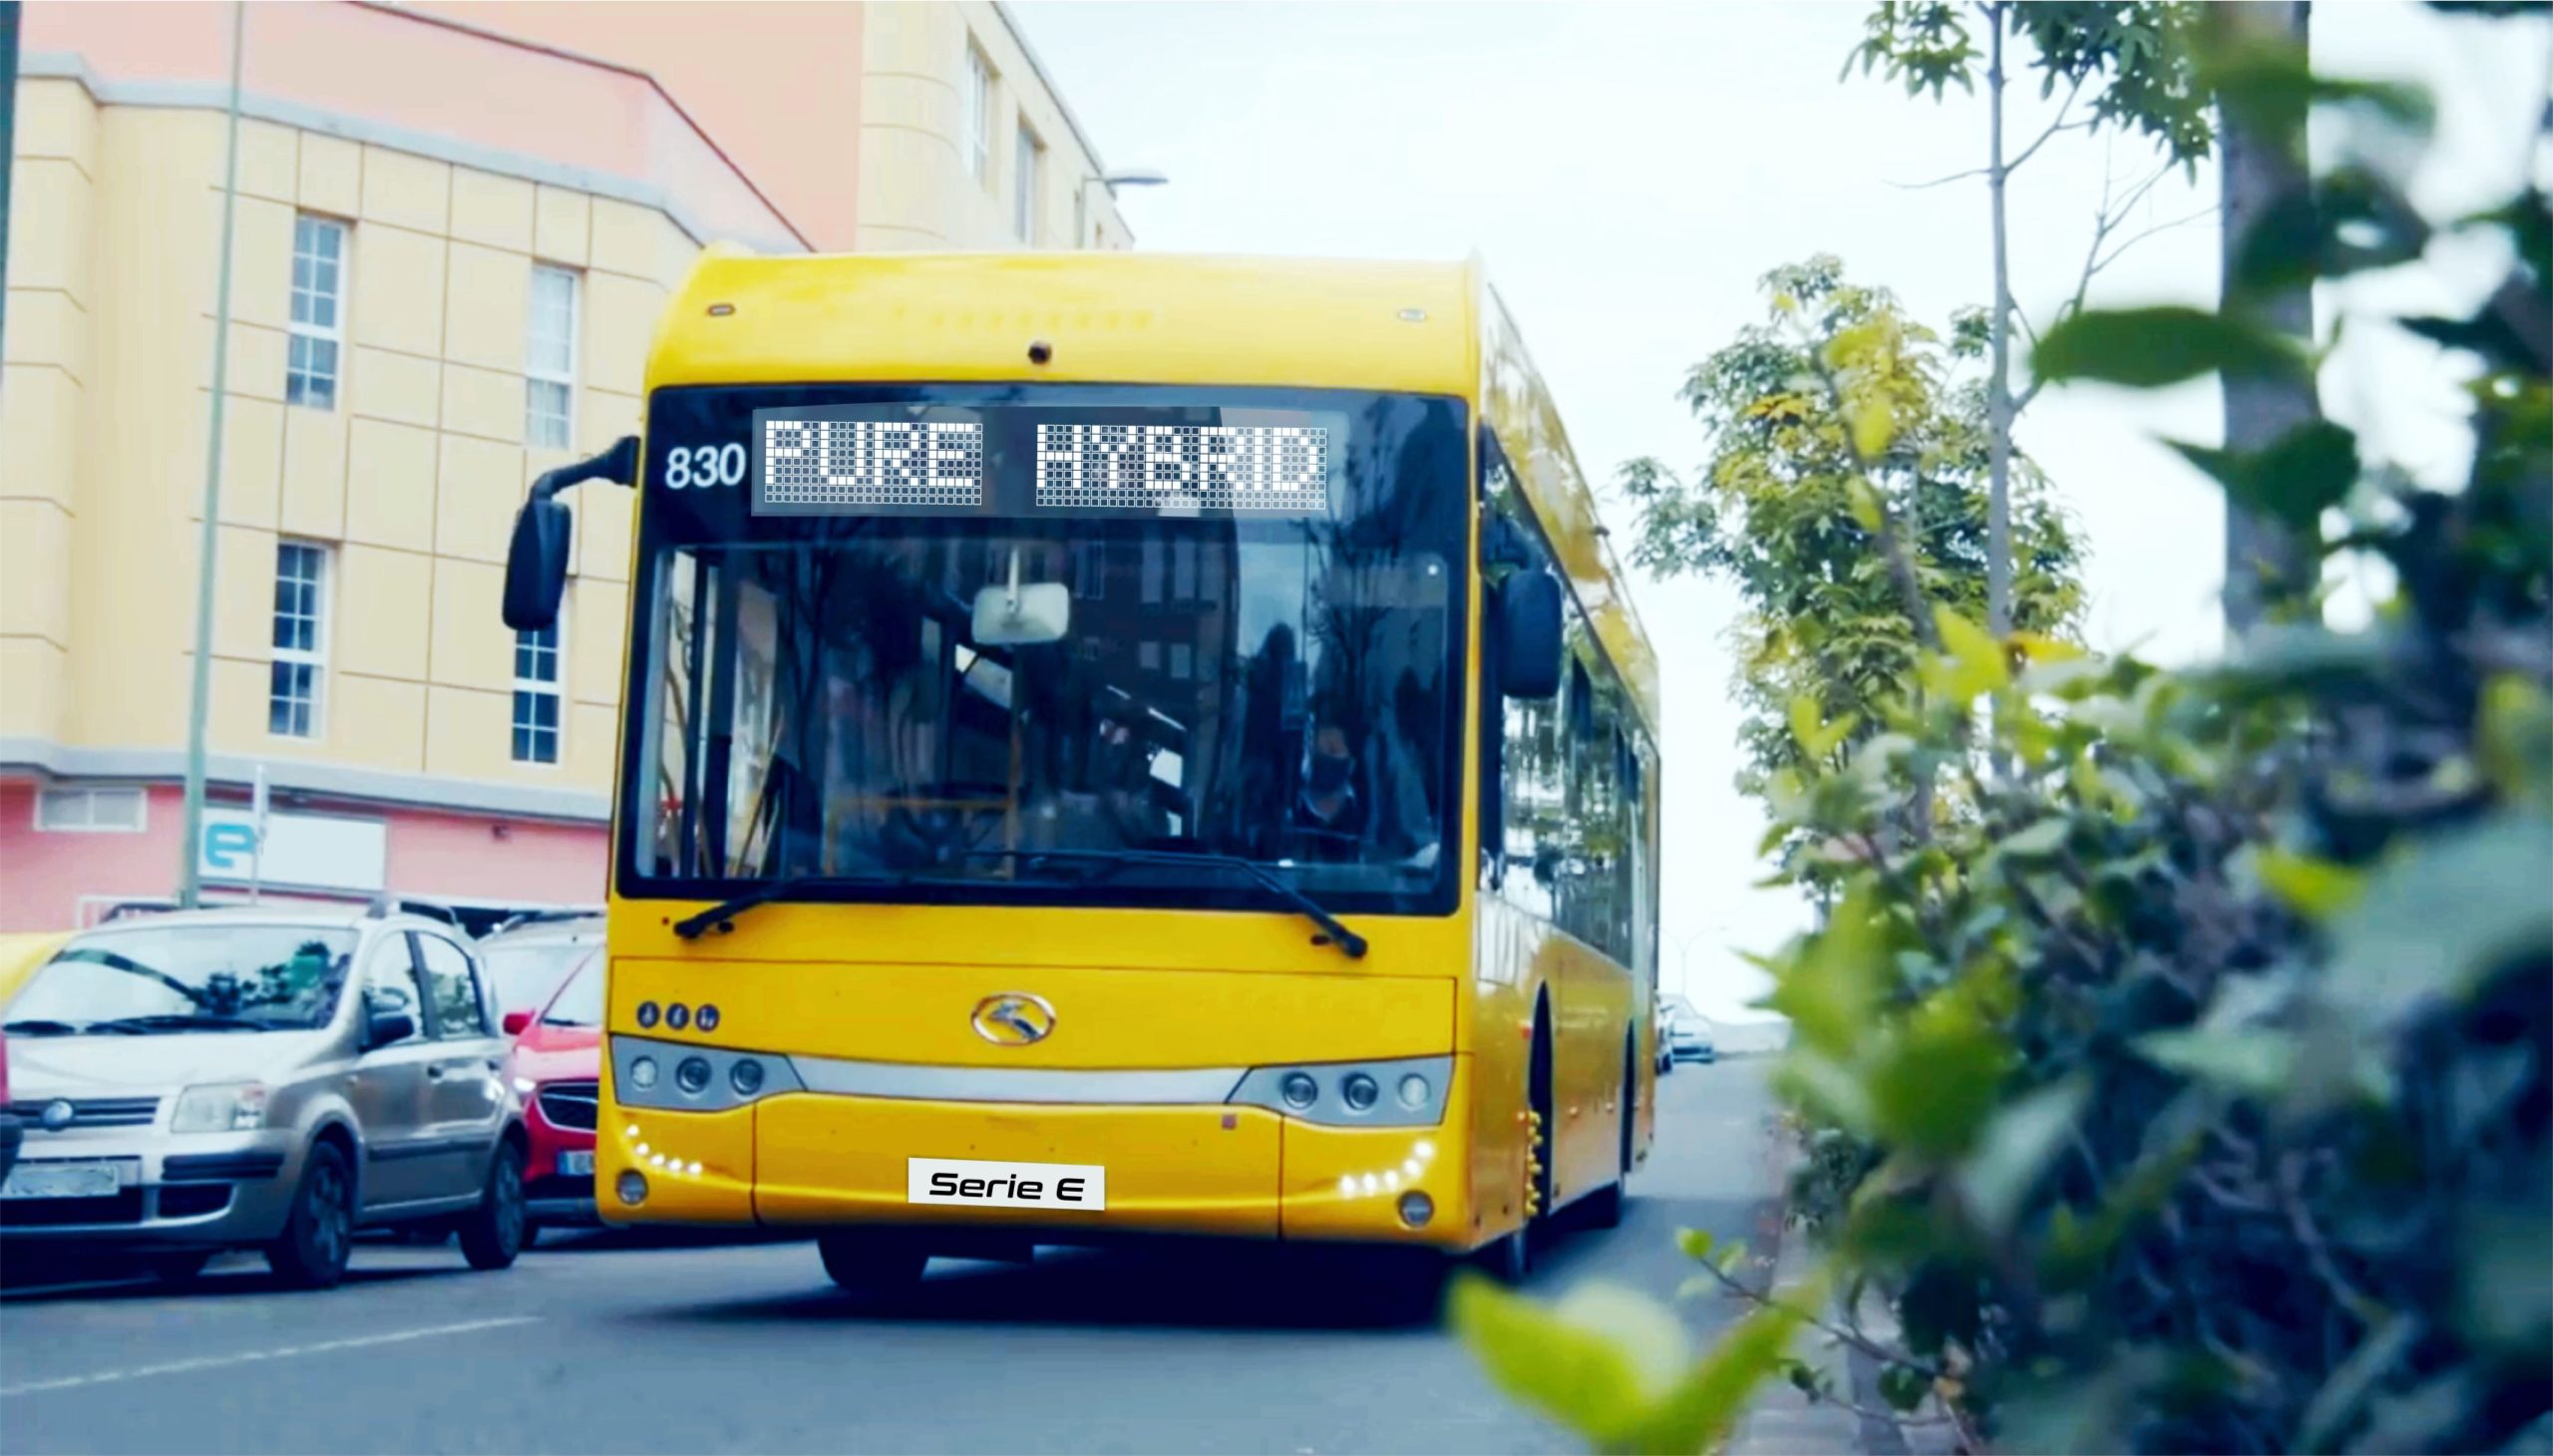 autobuses híbridos king long en servicio